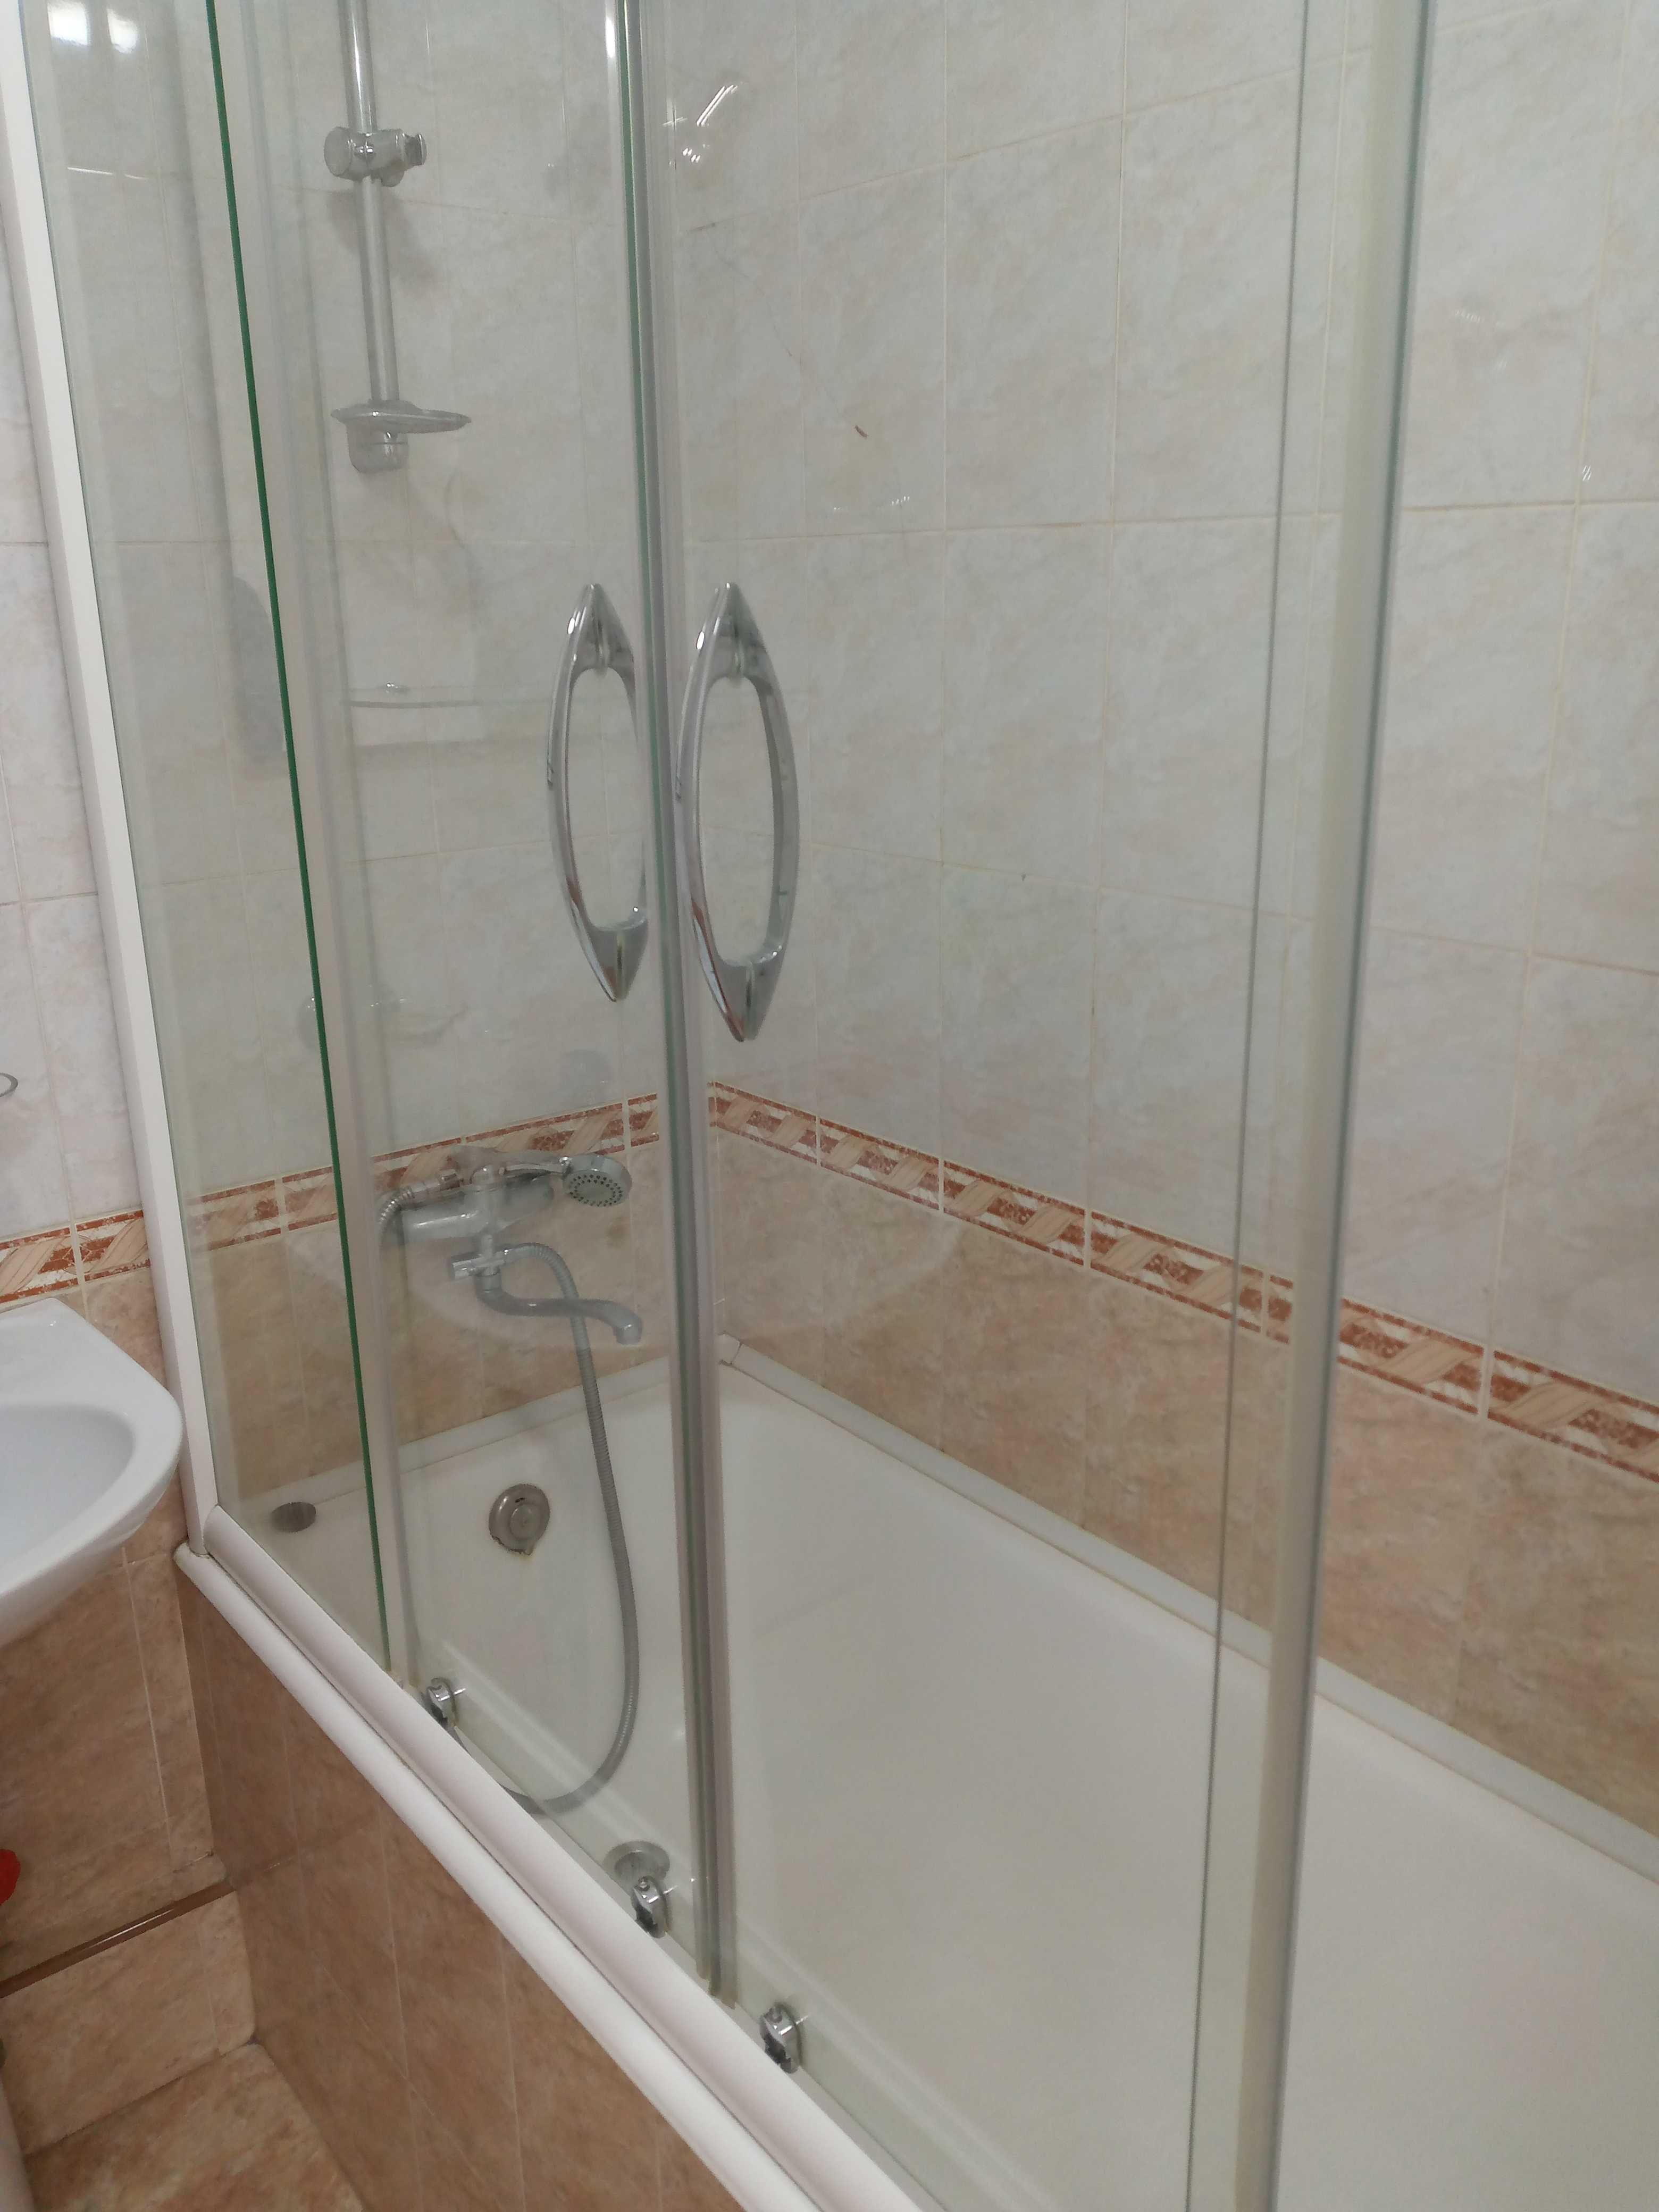 Роликовая стеклянная перегородка для ванны.Ширина 168см, выс 160см